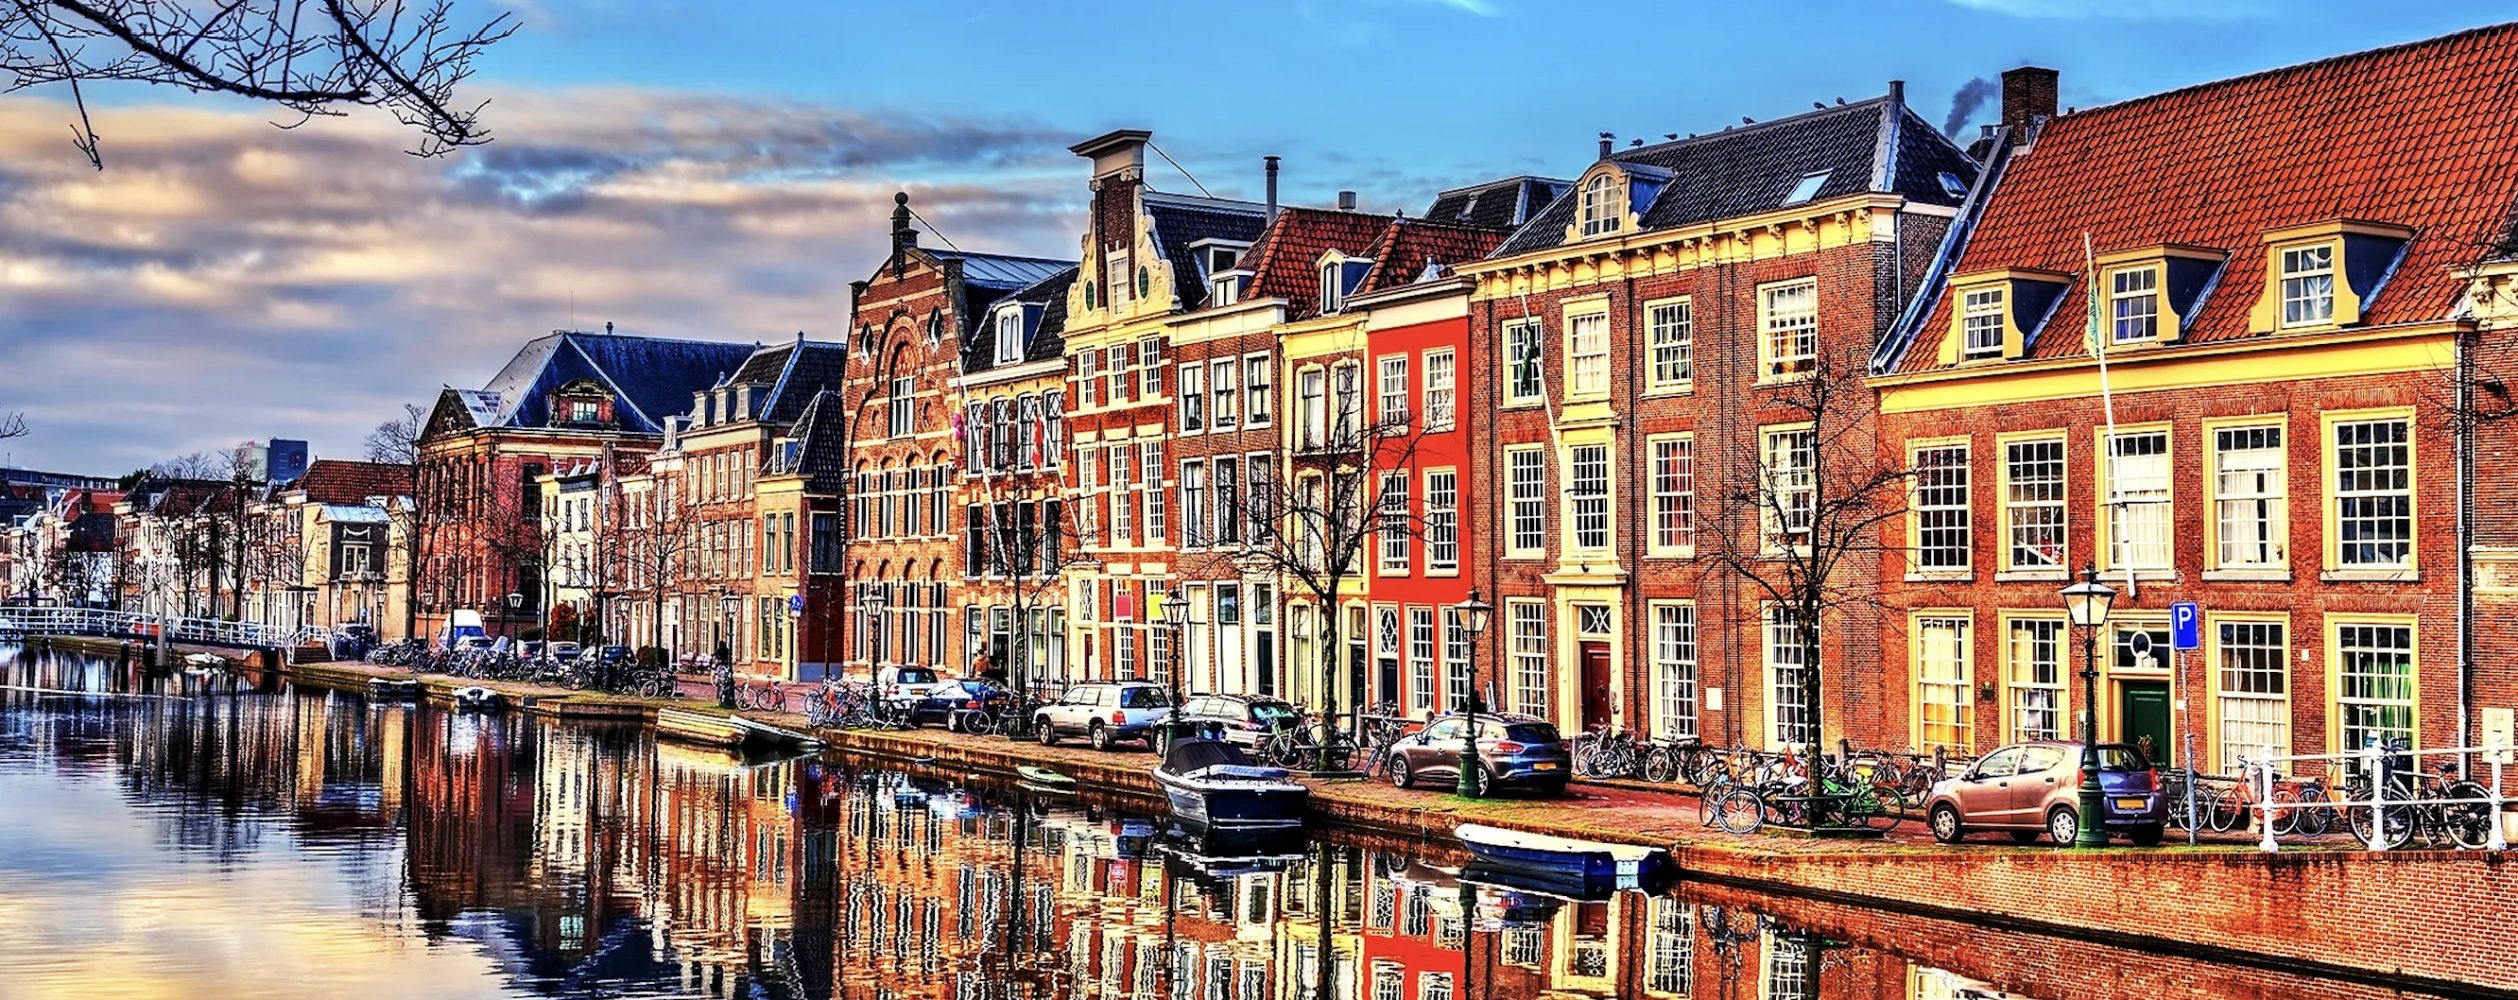 Du lịch Hà Lan cần bao nhiêu tiền?